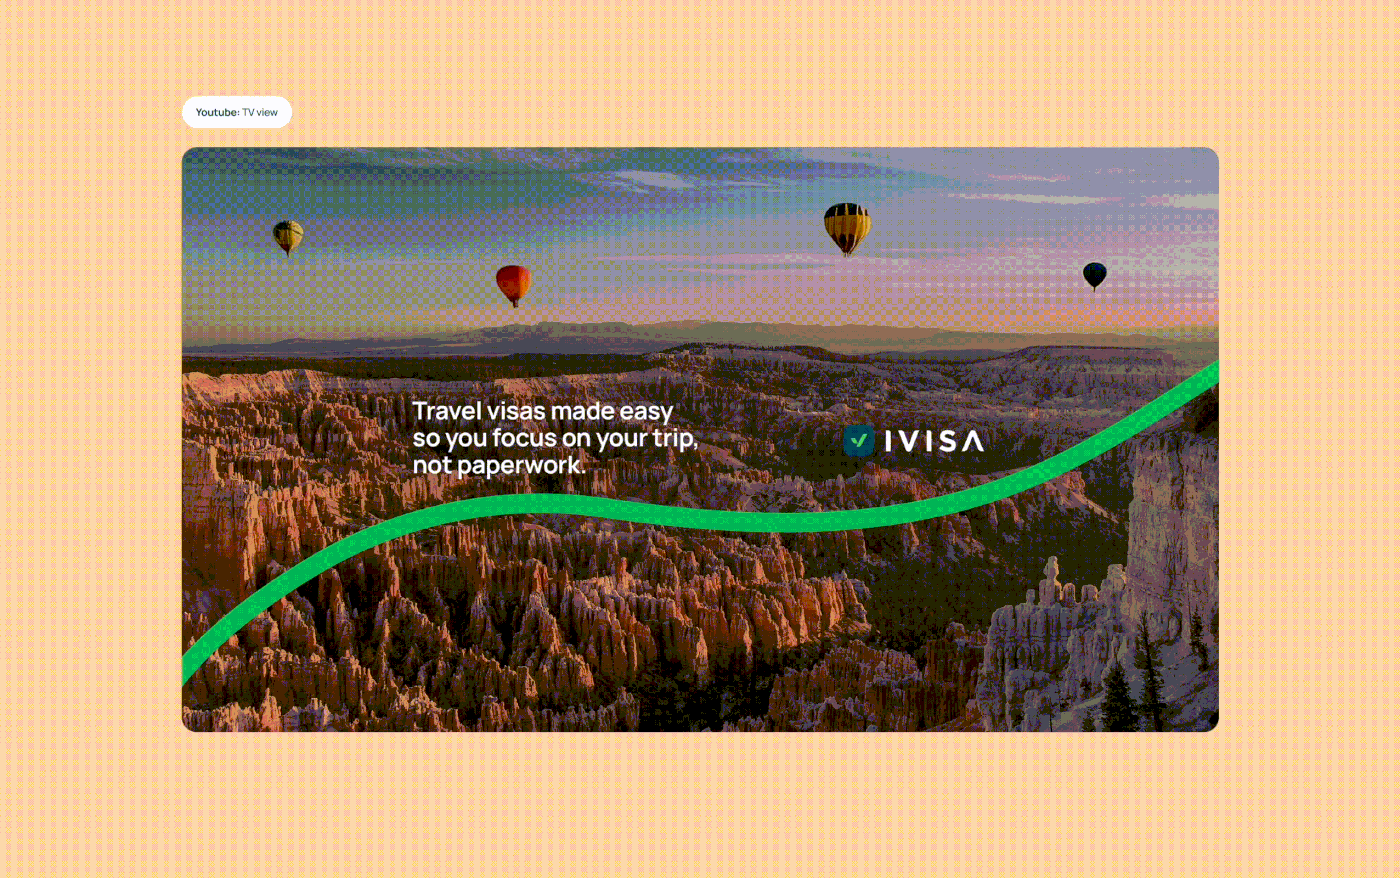 visual identity ads Social media post Travel travel design Visa traveling Instagram Post Socialmedia Social Media Design